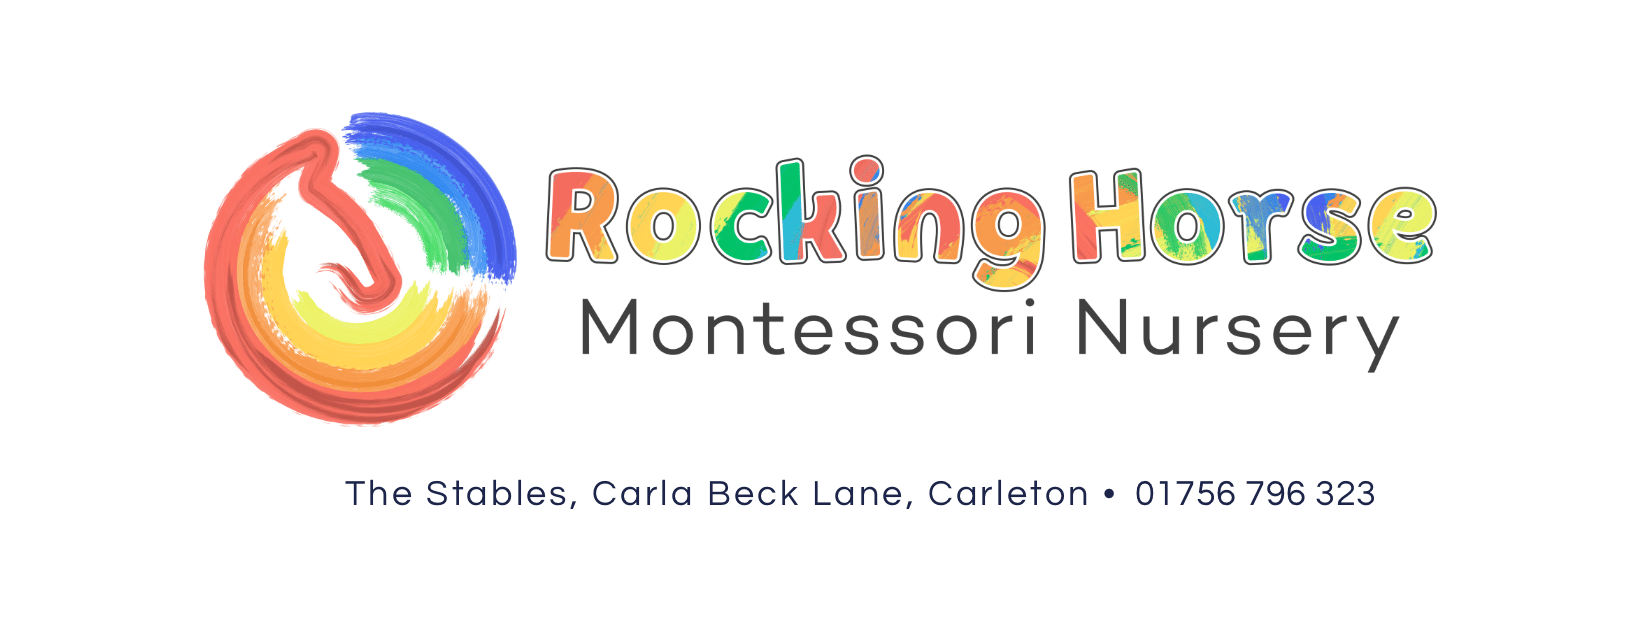 Rocking Horse Montessori Nursery